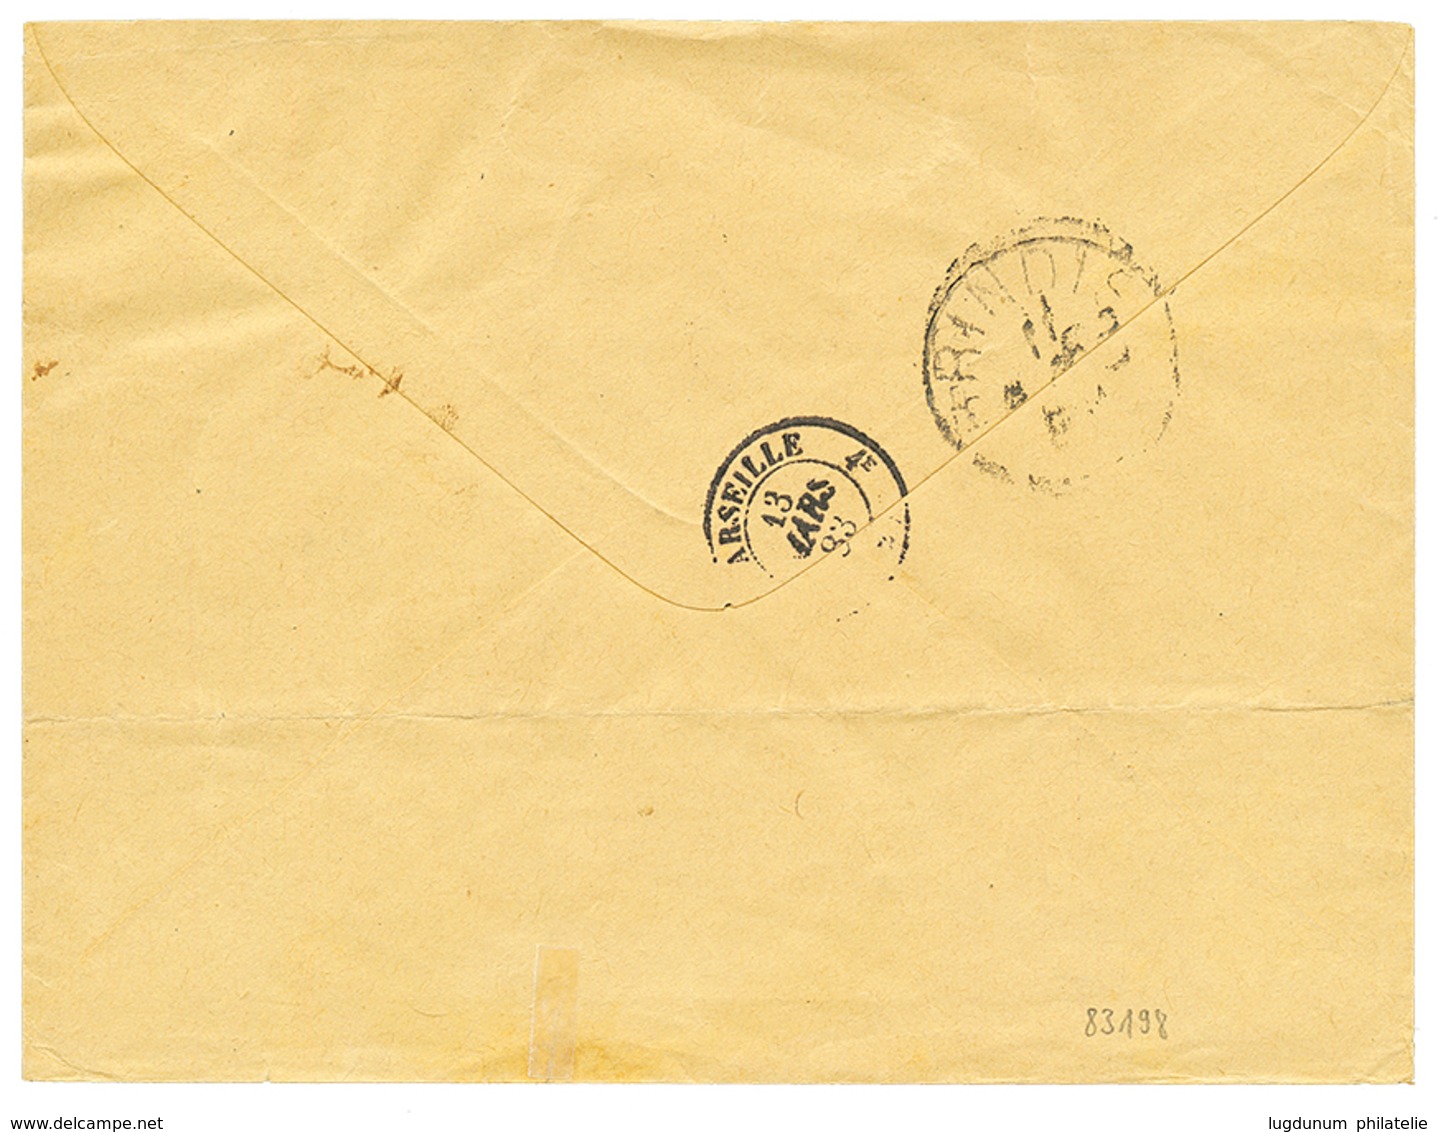 1883 Pair 5 Soldi Canc. CANEA On Envelope To FRANCE. Superb Quality. - Levant Autrichien